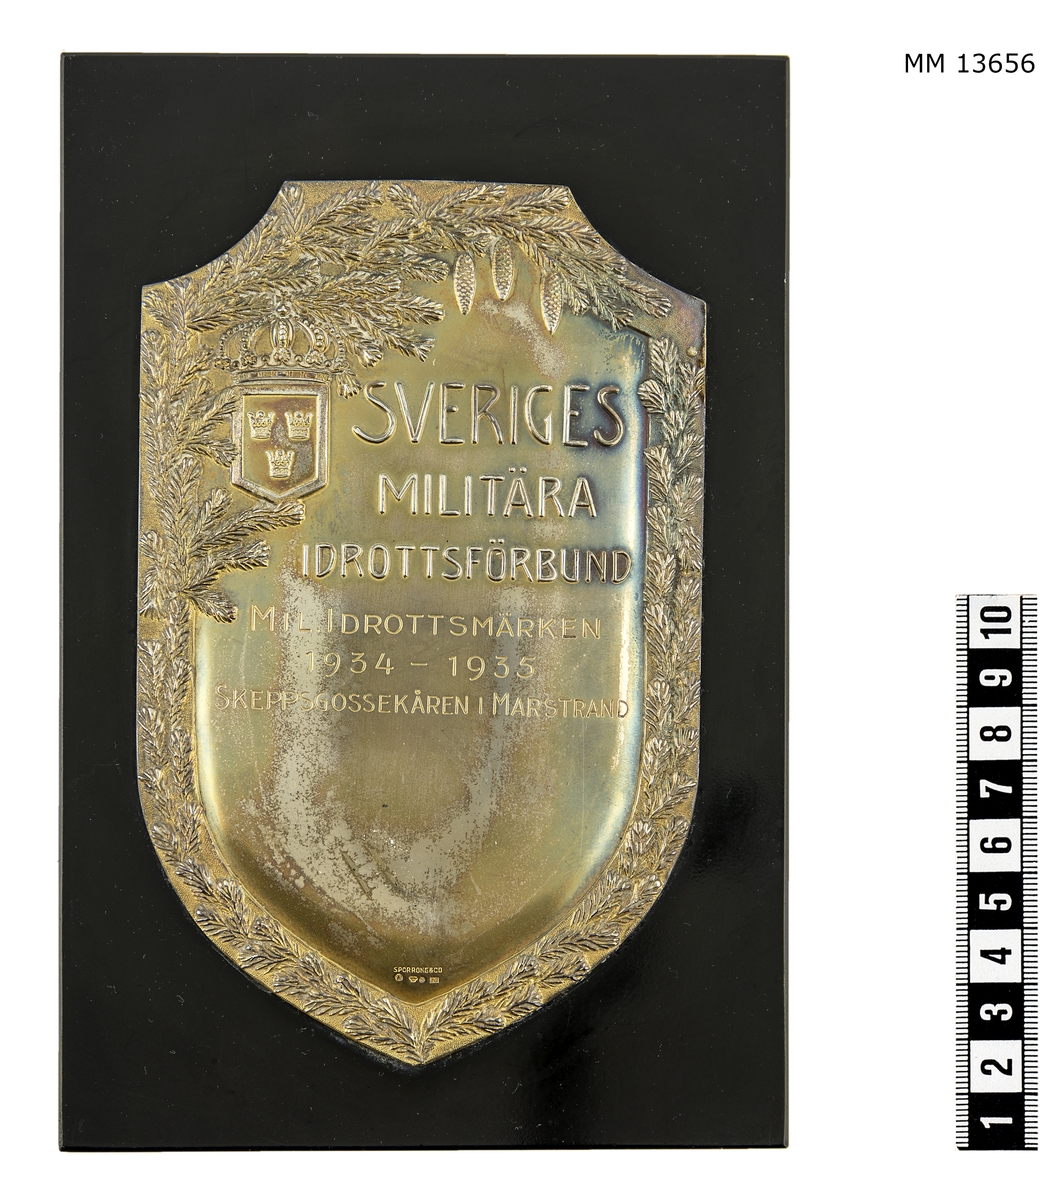 Plakett.
Text: Sveriges Militära Idrottsförbund.
Ingraverat: Militärt Idrottsmärke 1934 - 1935.
Stämpel: SPORRONG&CO I 8